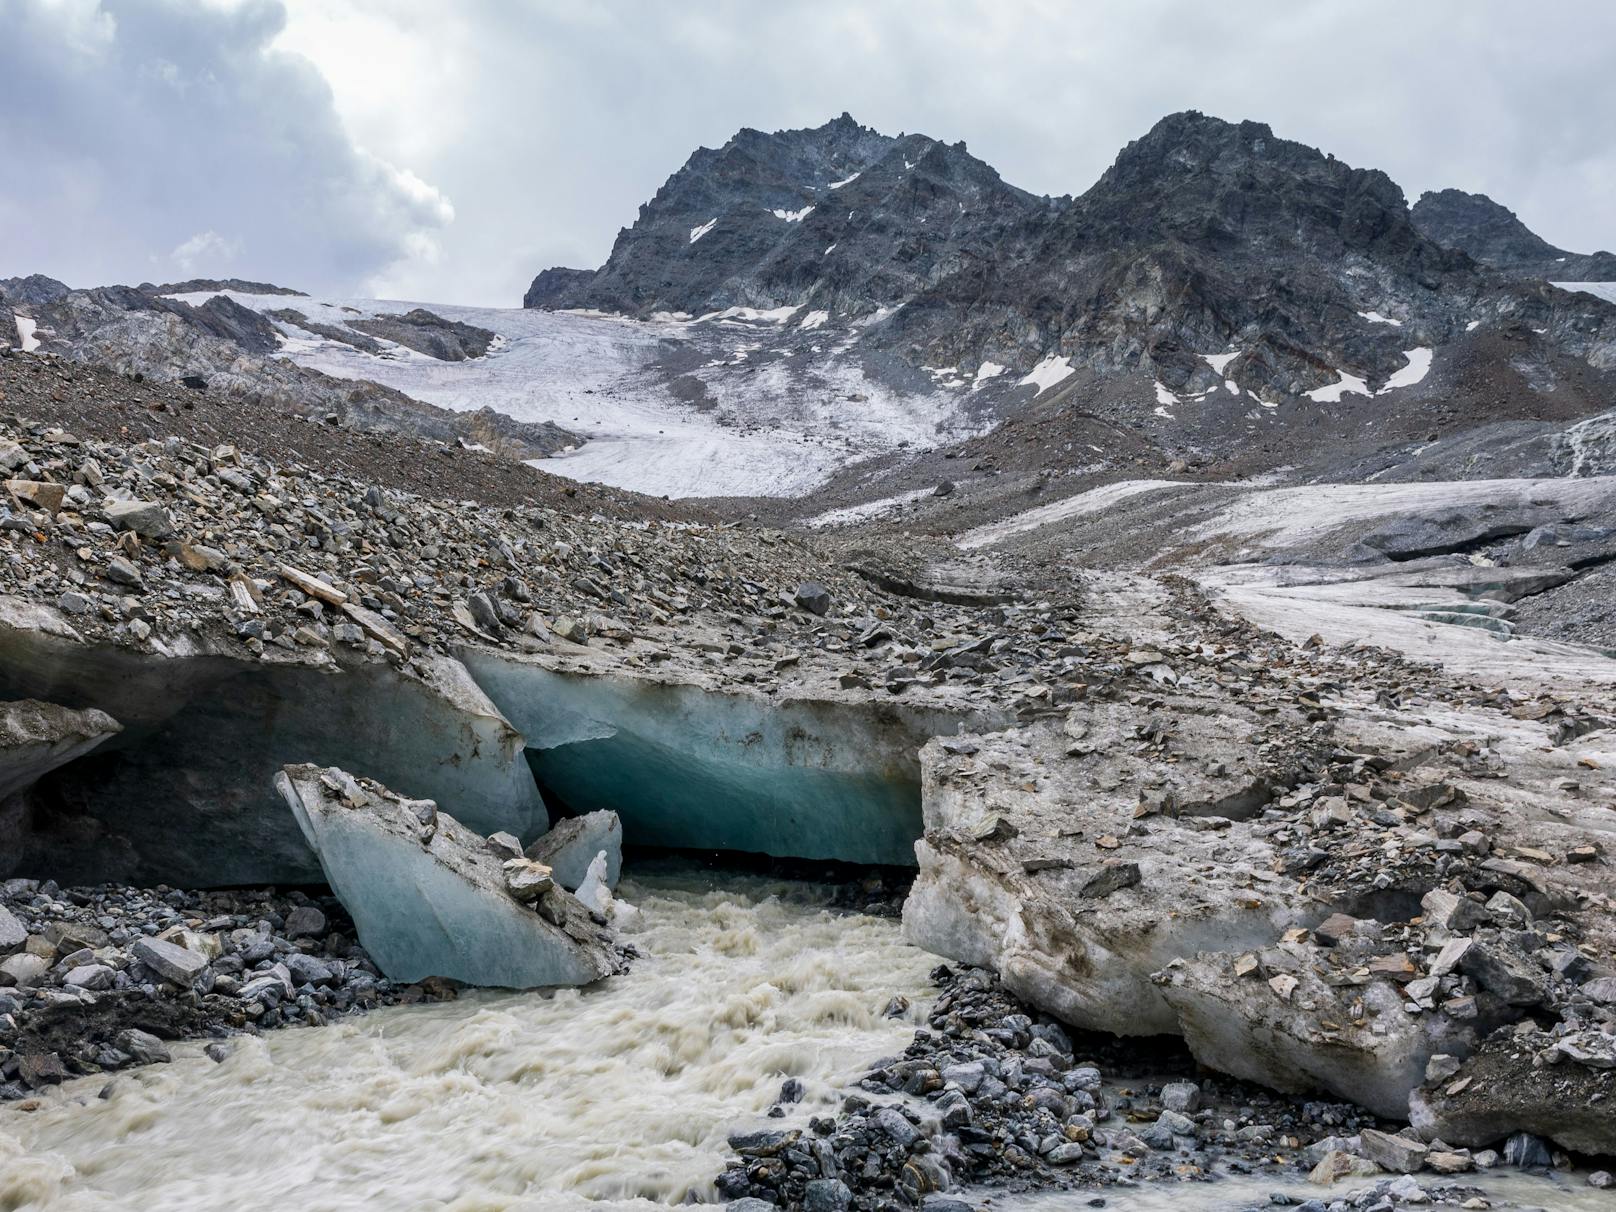 Das Schmelzwasser sammelt sich unter den Eismassen. Die gesamte hochalpine Landschaft um den einst massiven Eiskörper des Tiroler Jamtalgletschers ist in Bewegung.